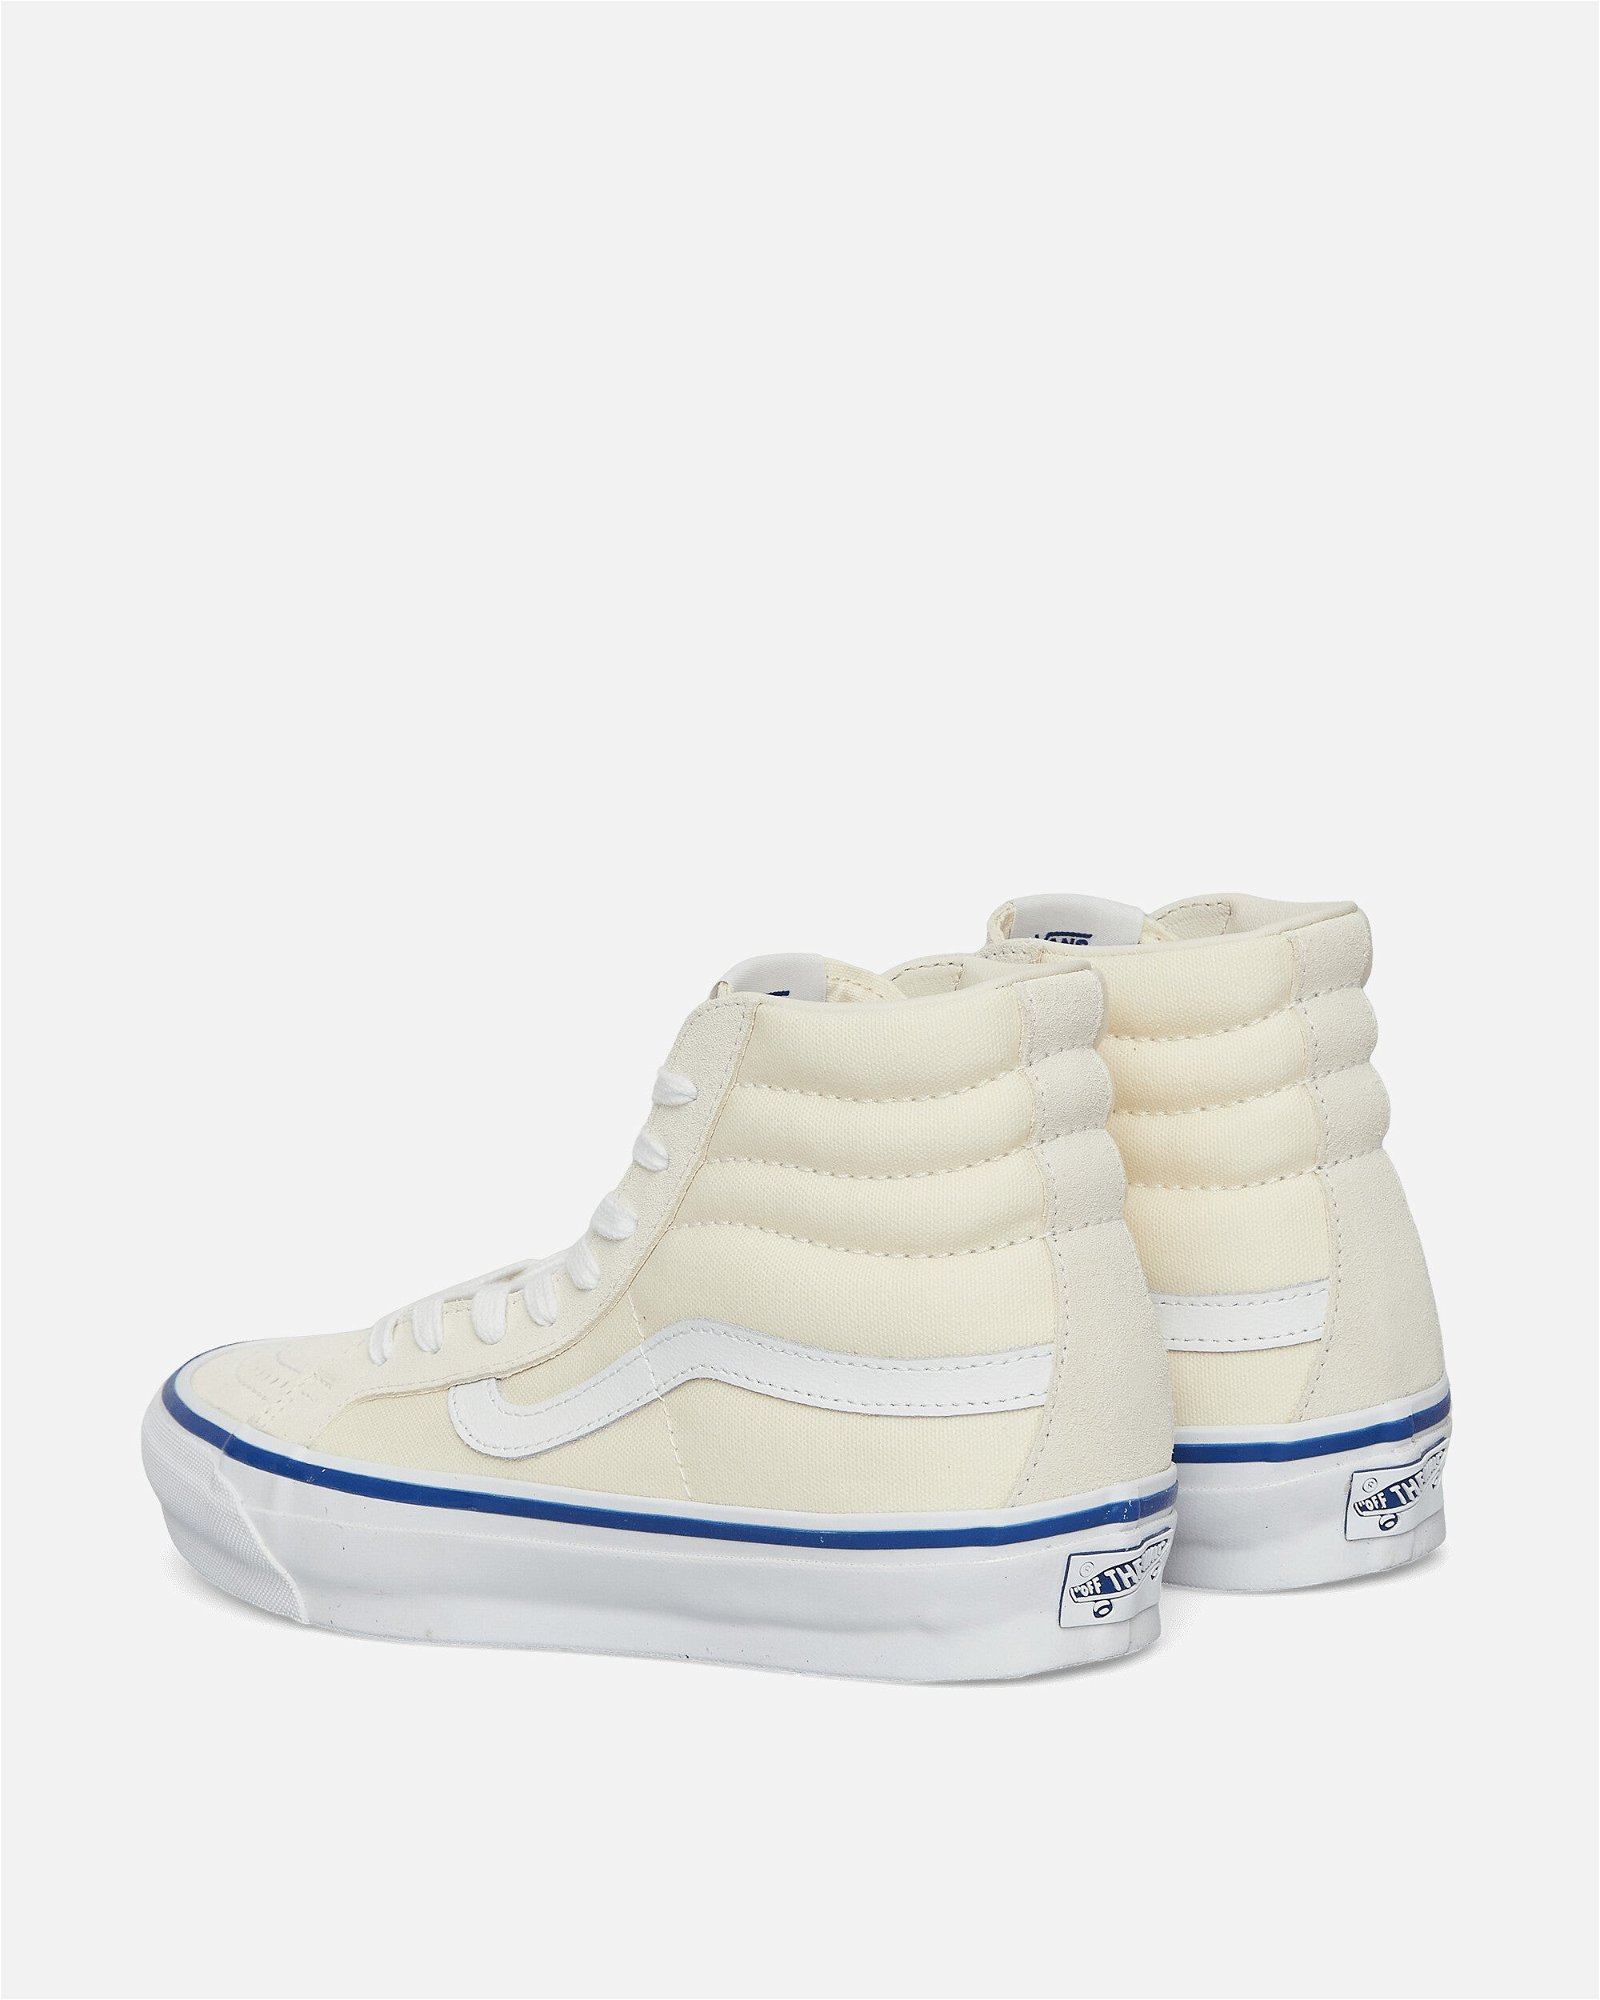 OG SK8-Hi LX Sneakers Off White